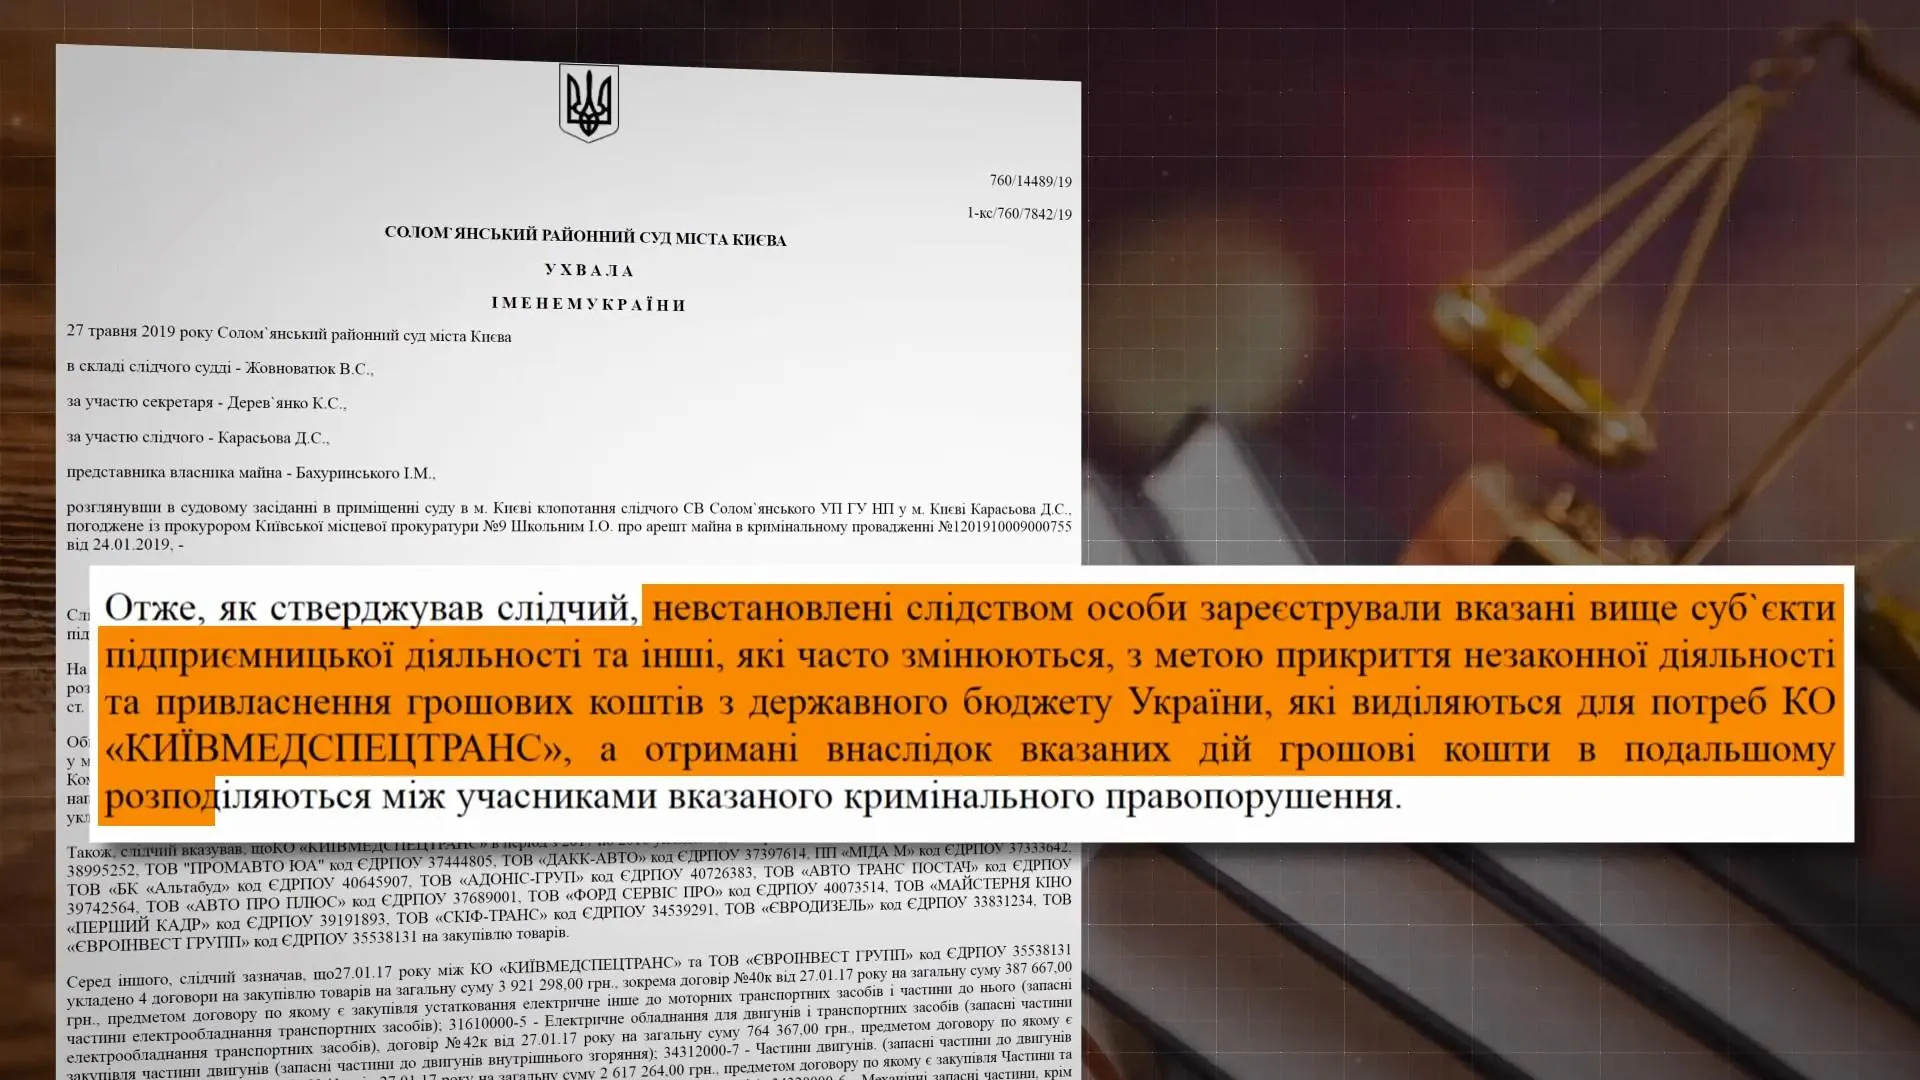 Мертві власники і фіктивні фірми: шокуюче розслідування про корупцію в "Київмедспецтрансі"